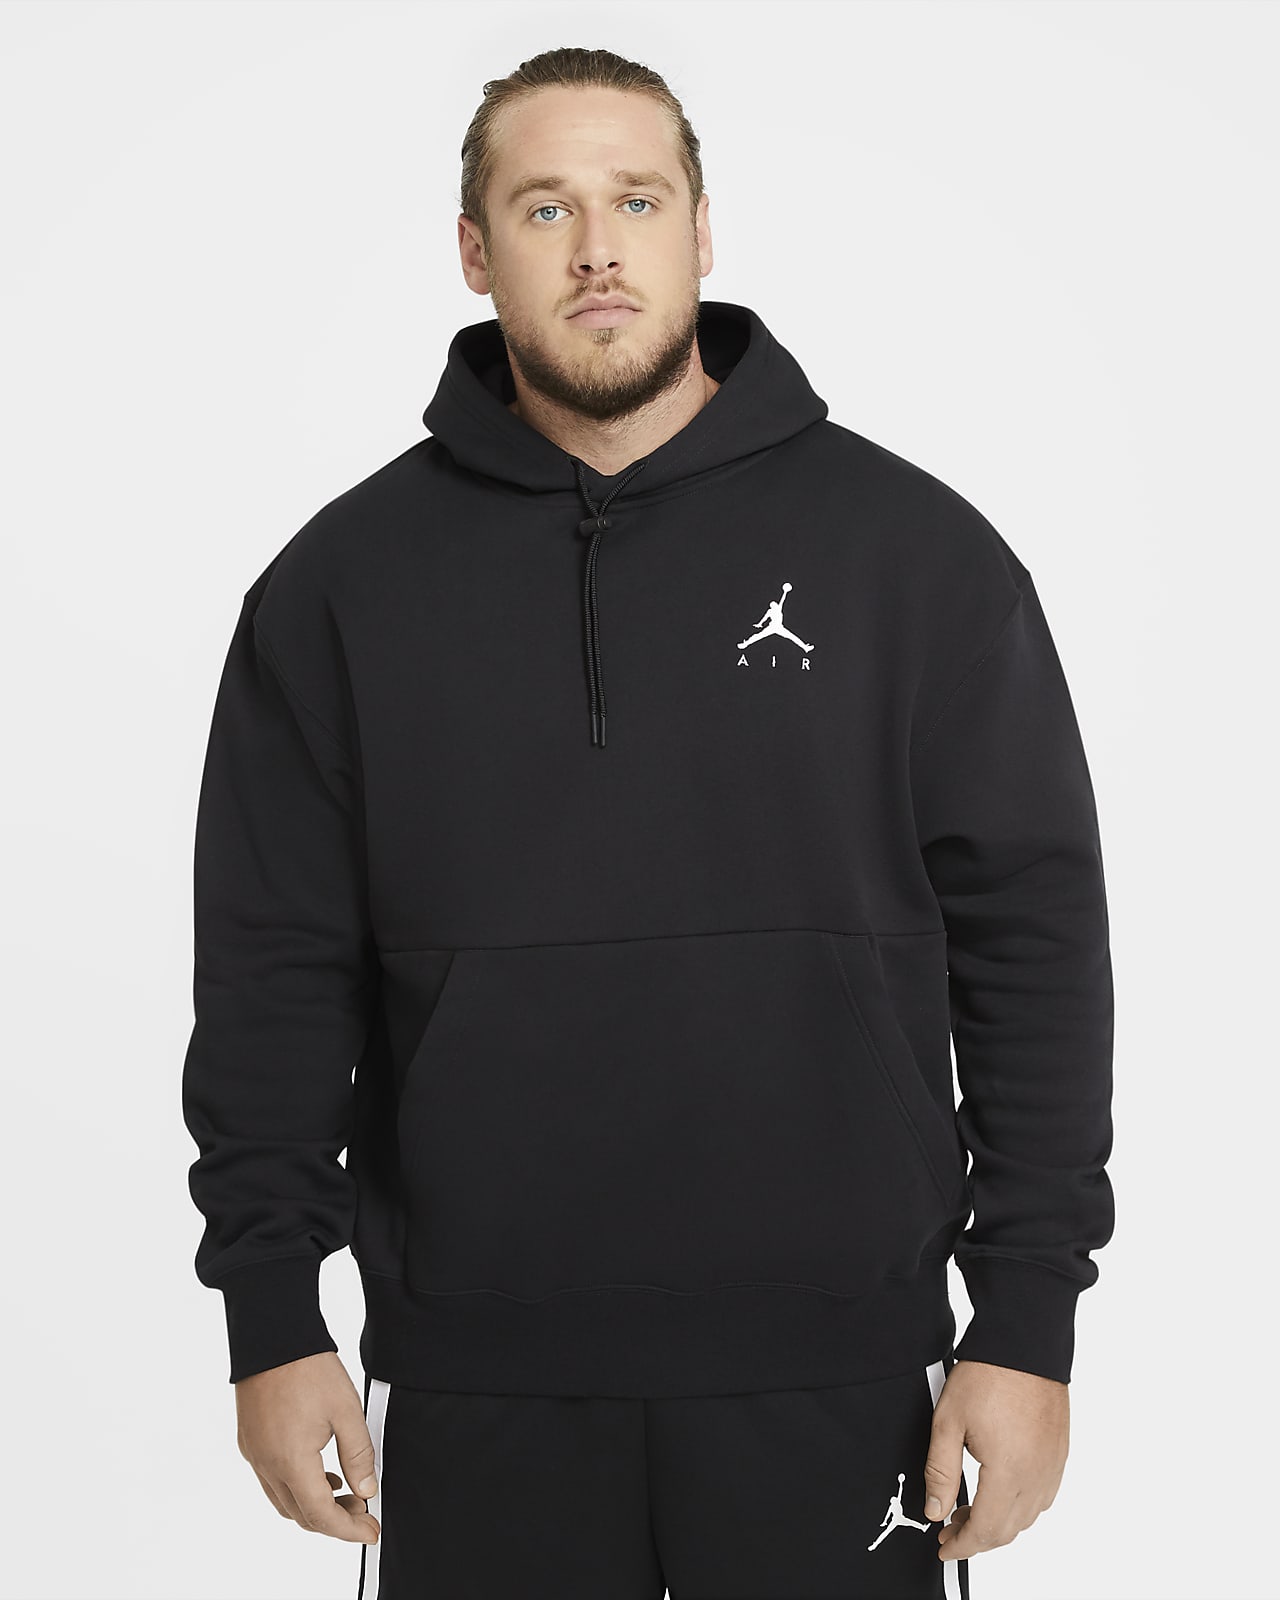 jumpman air gfx pullover hoodie